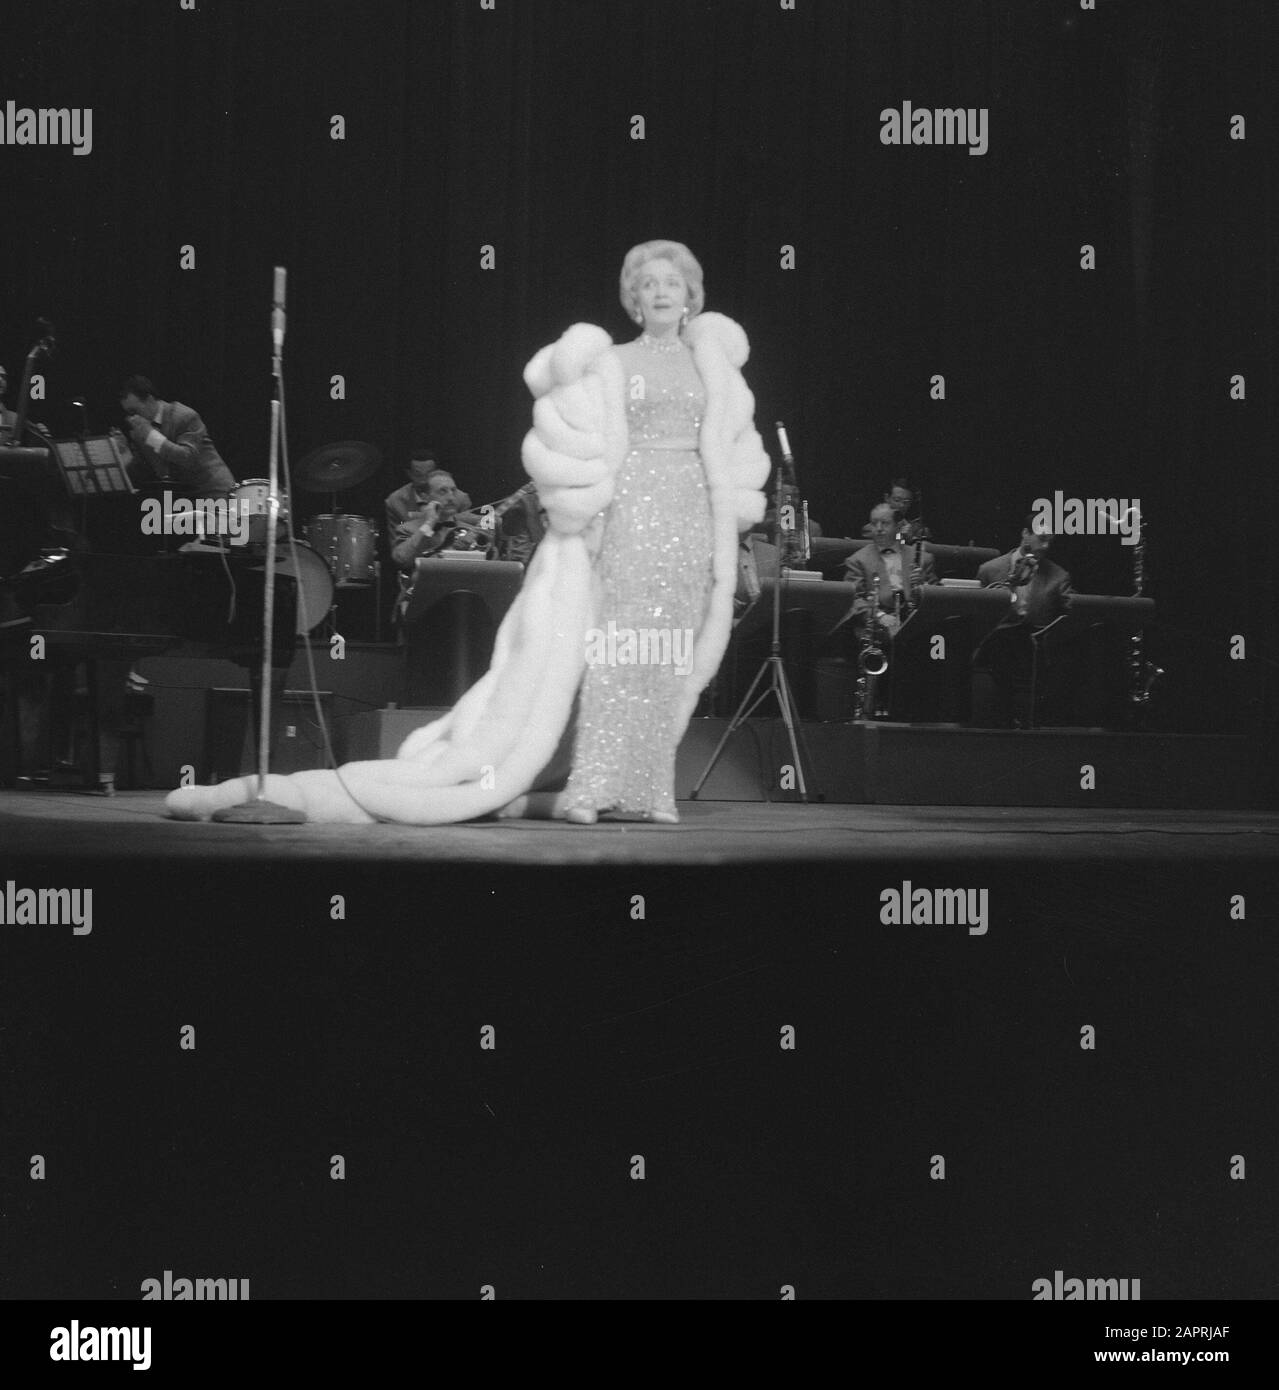 Représentation nocturne de Marlene Dietrich au Tuschinkitheater d'Amsterdam Date: 28 mai 1960 lieu: Amsterdam, Noord-Holland mots clés: Actrices, stars du cinéma, théâtre, spectacles, etc chanteurs Nom personnel: Dietrich Marlene Banque D'Images